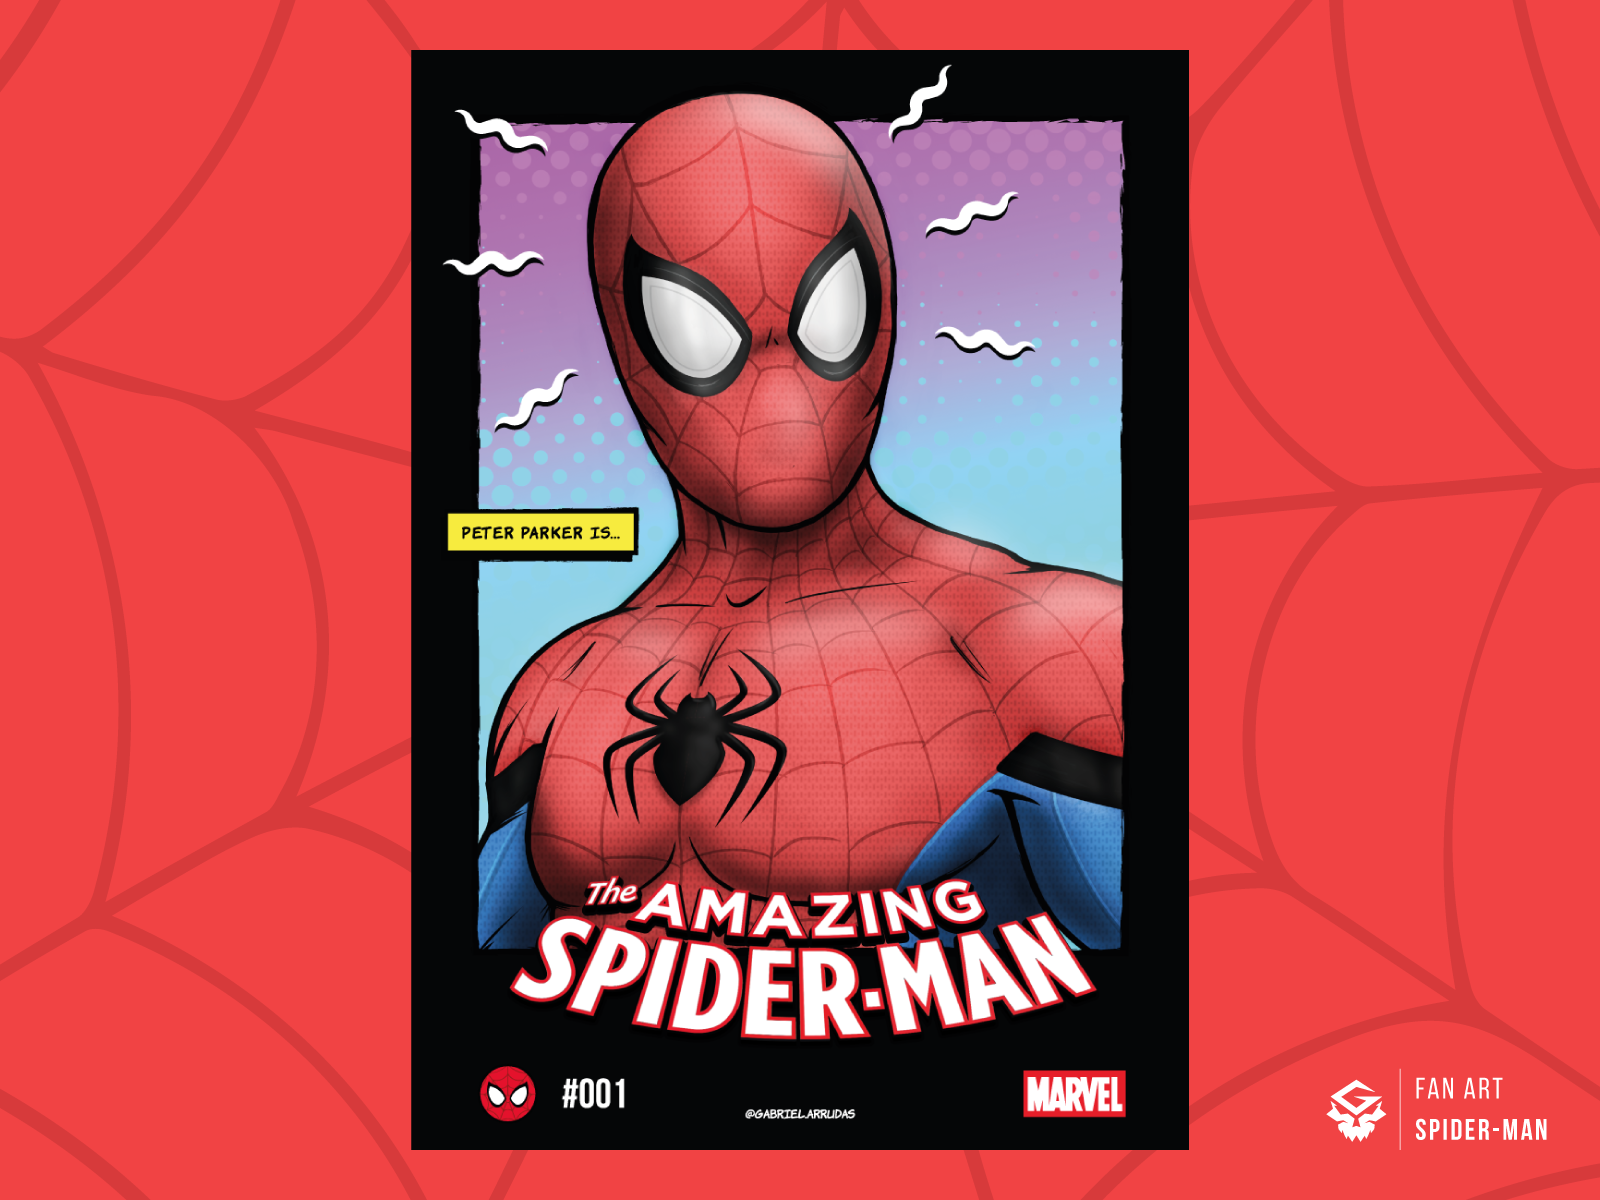 Spider-Man | Fan art poster by Gabriel Arruda on Dribbble